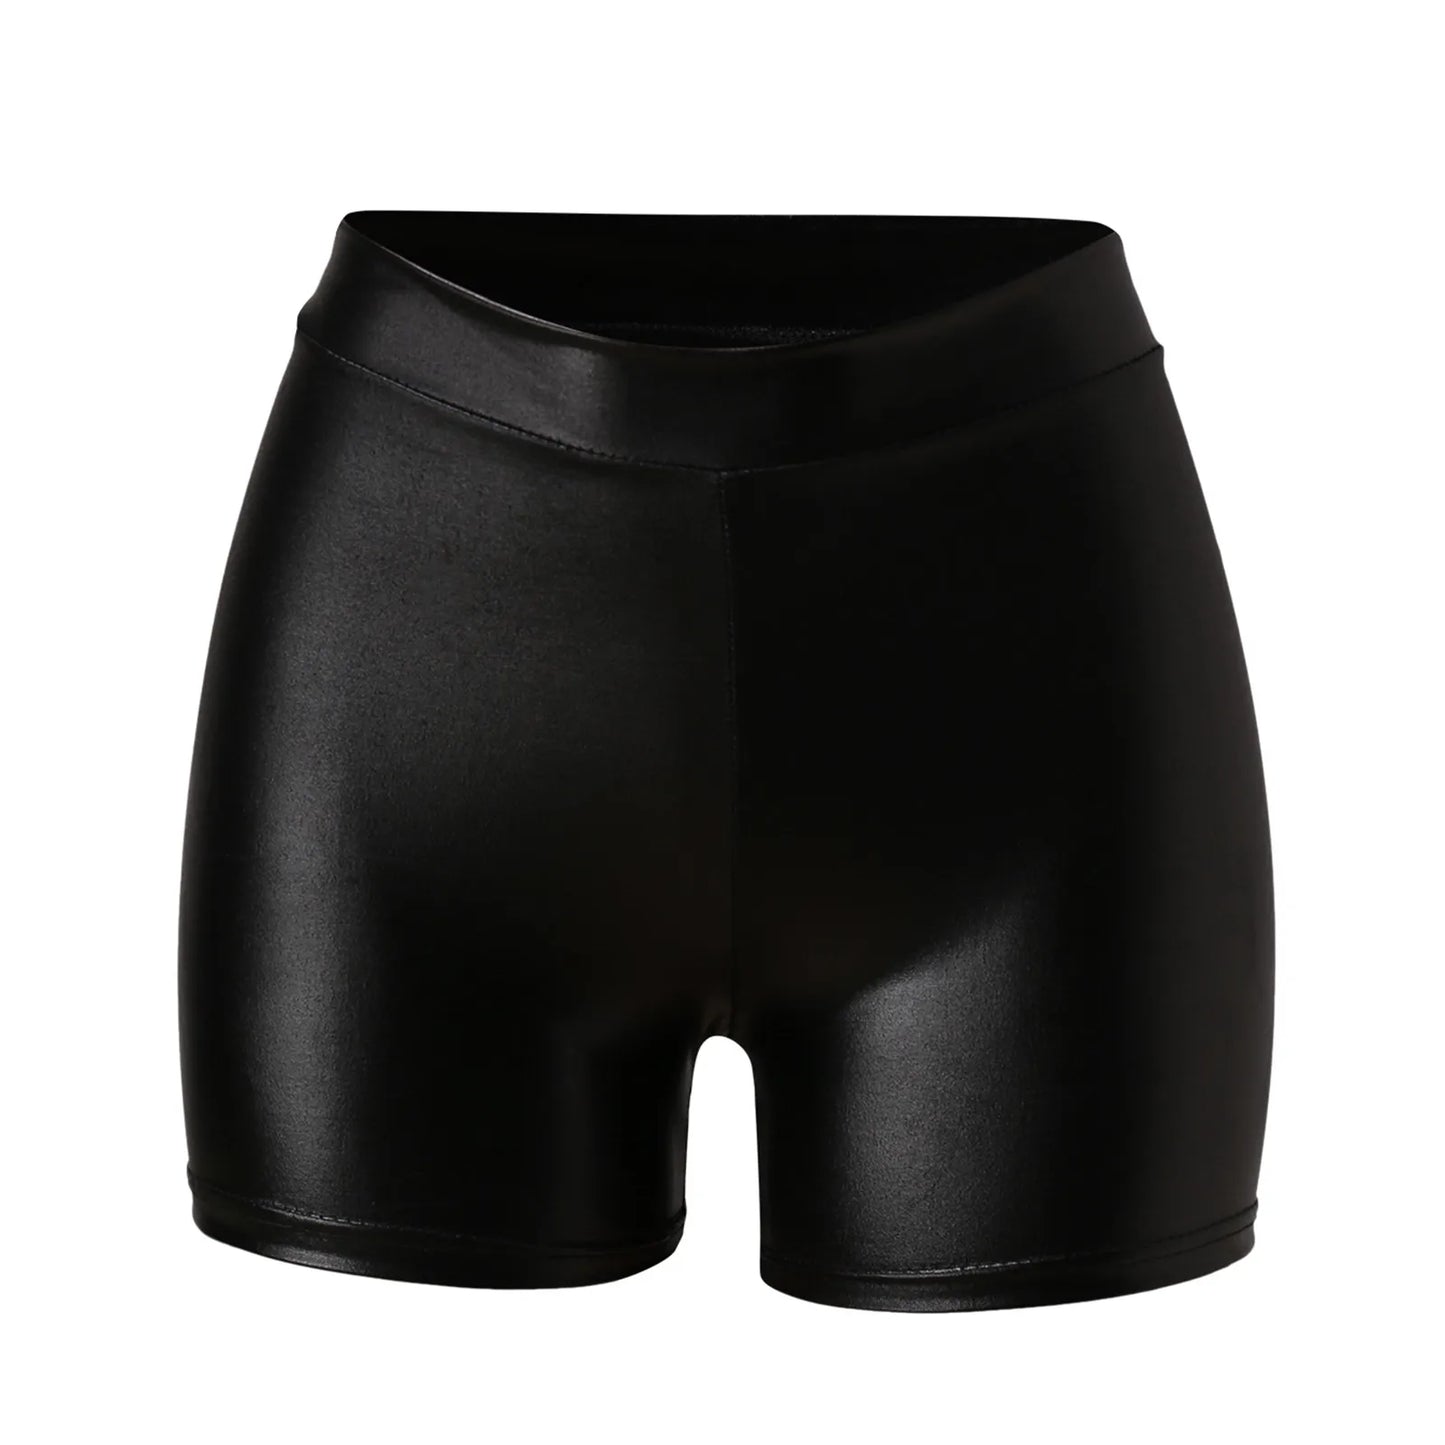 Women's Sexy Black High Waist Shorts